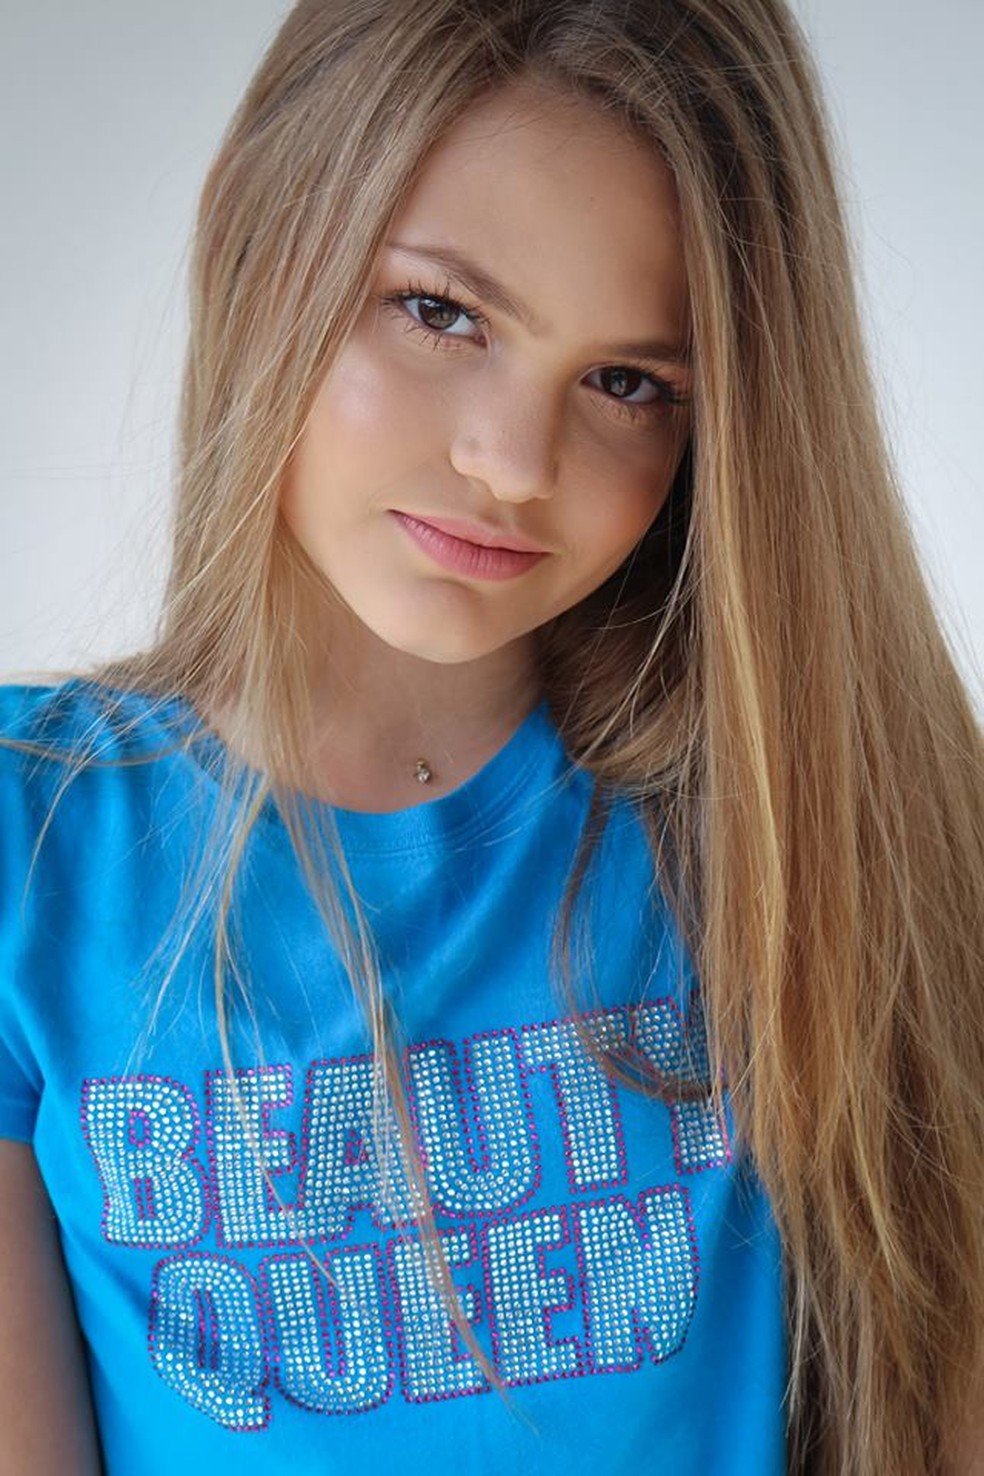 20620758 671435449721820 8226967132654818313 n - Capixaba é eleita pré-adolescente mais bonita do mundo em concurso nos EUA